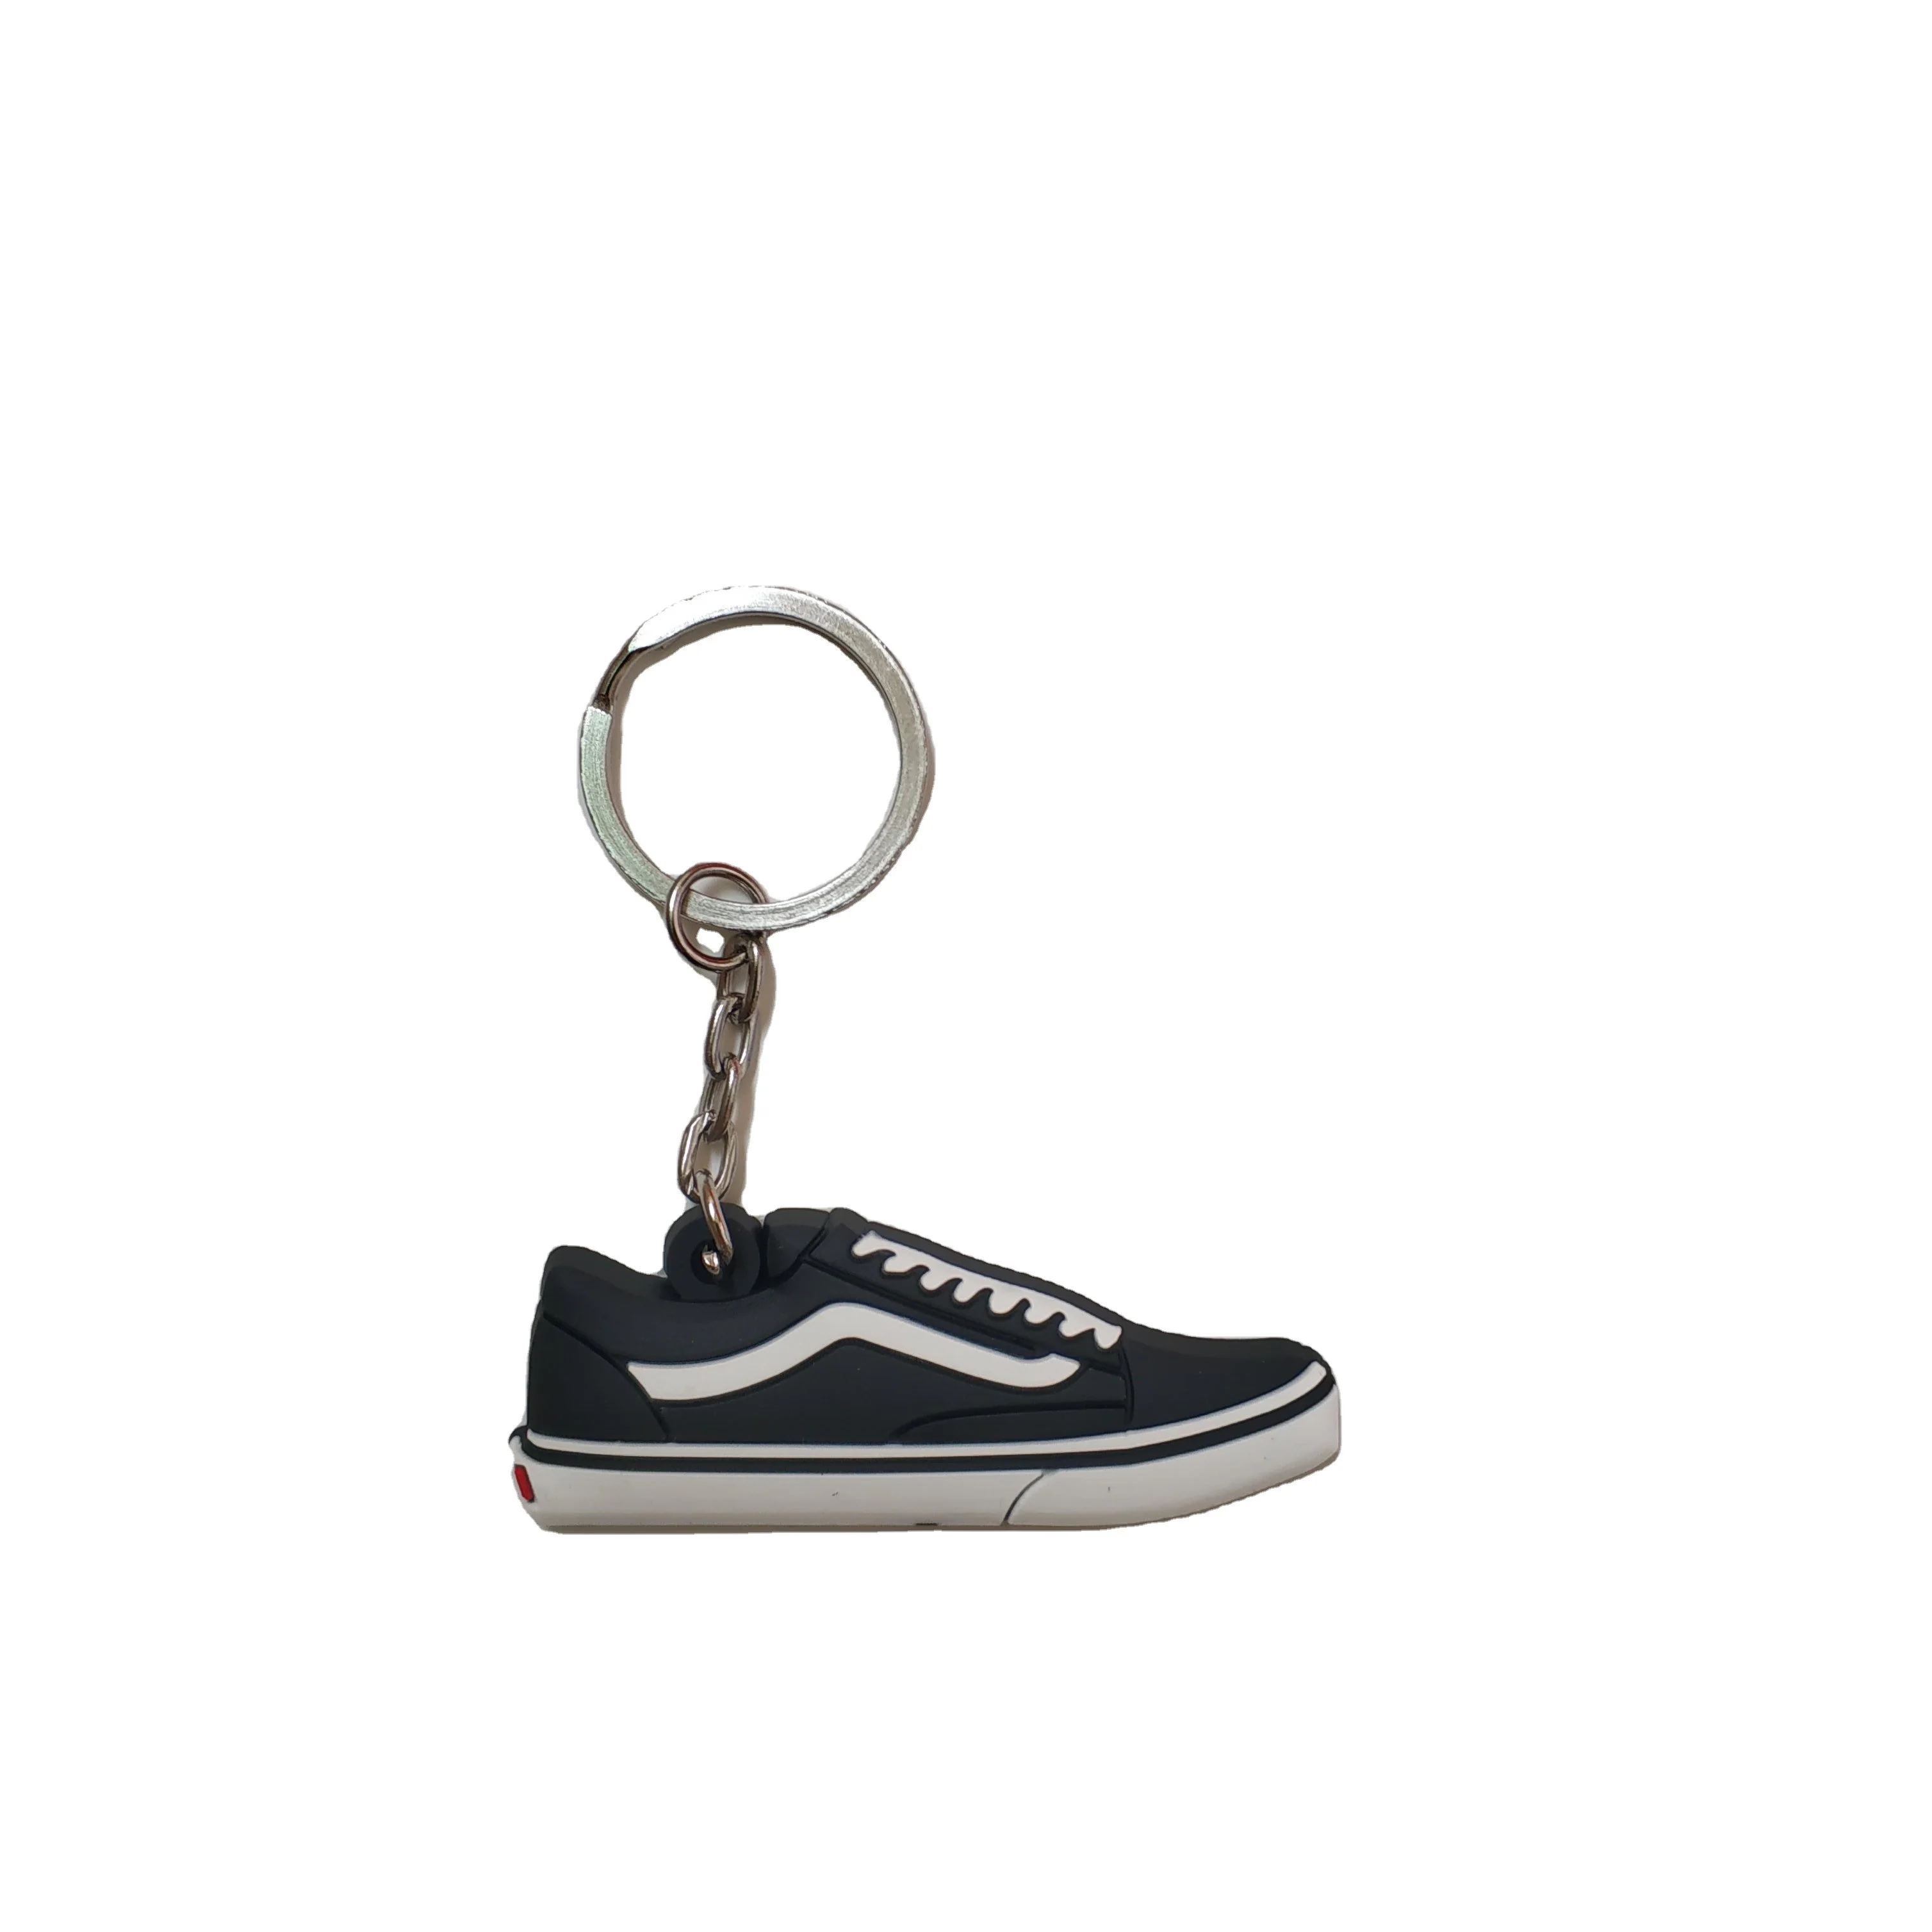 Vanss Shoe Keychain In Flat - Buy Vanss Sneaker Keychain,Shoe Keychain,Michael Jordan Keychain Product on Alibaba.com